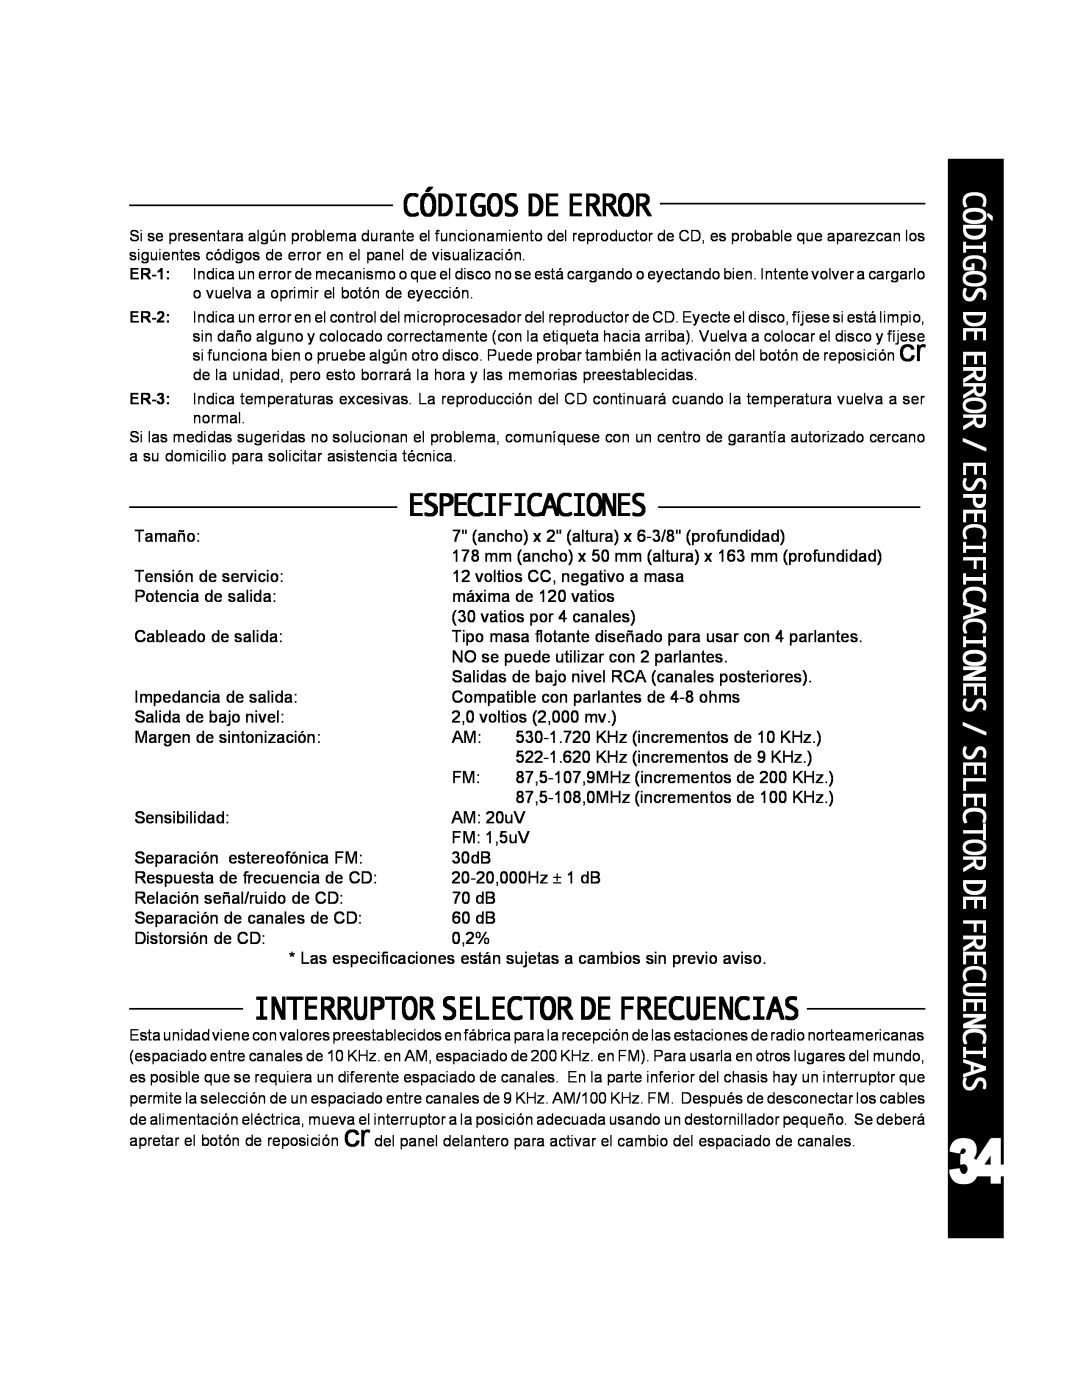 Audiovox ACD-25 manual Códigosdeerror, Interruptorselectordefrecuencias, Especificaciones 